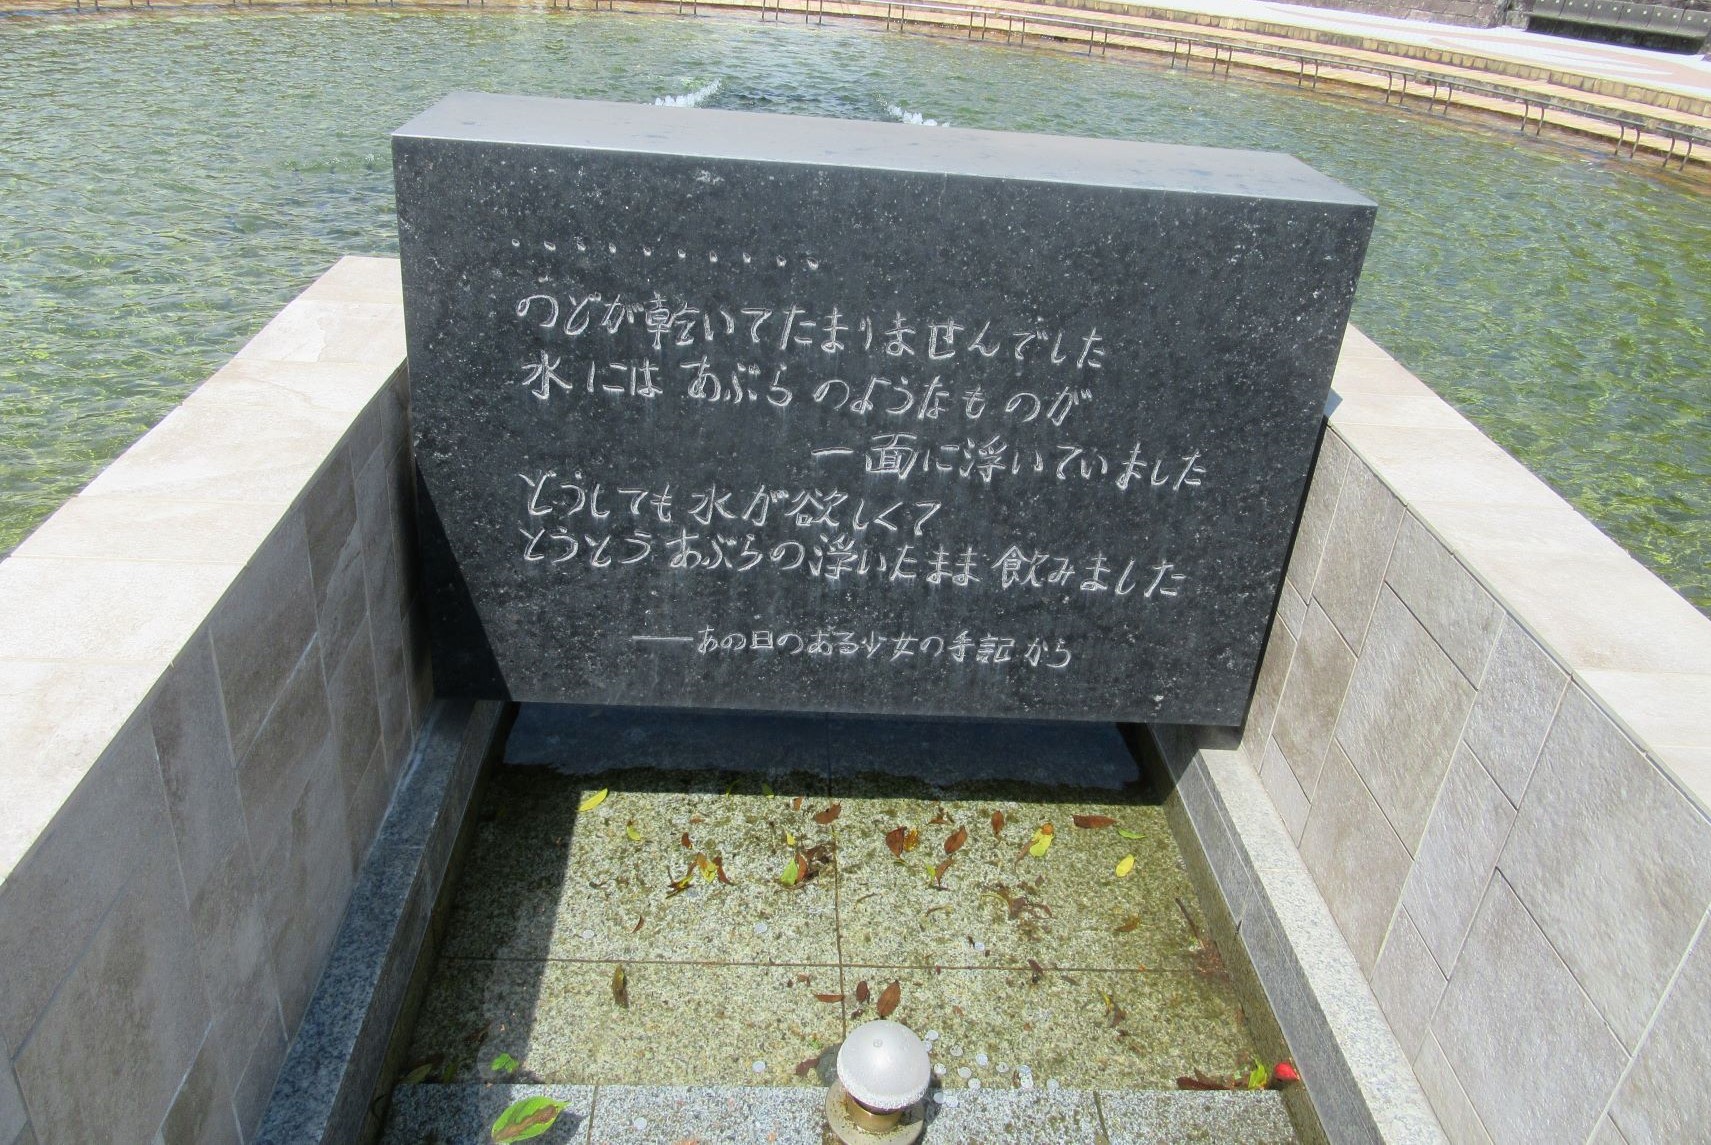 長崎市平和公園の平和の泉にある、『あの日のある少女の手記』の碑。